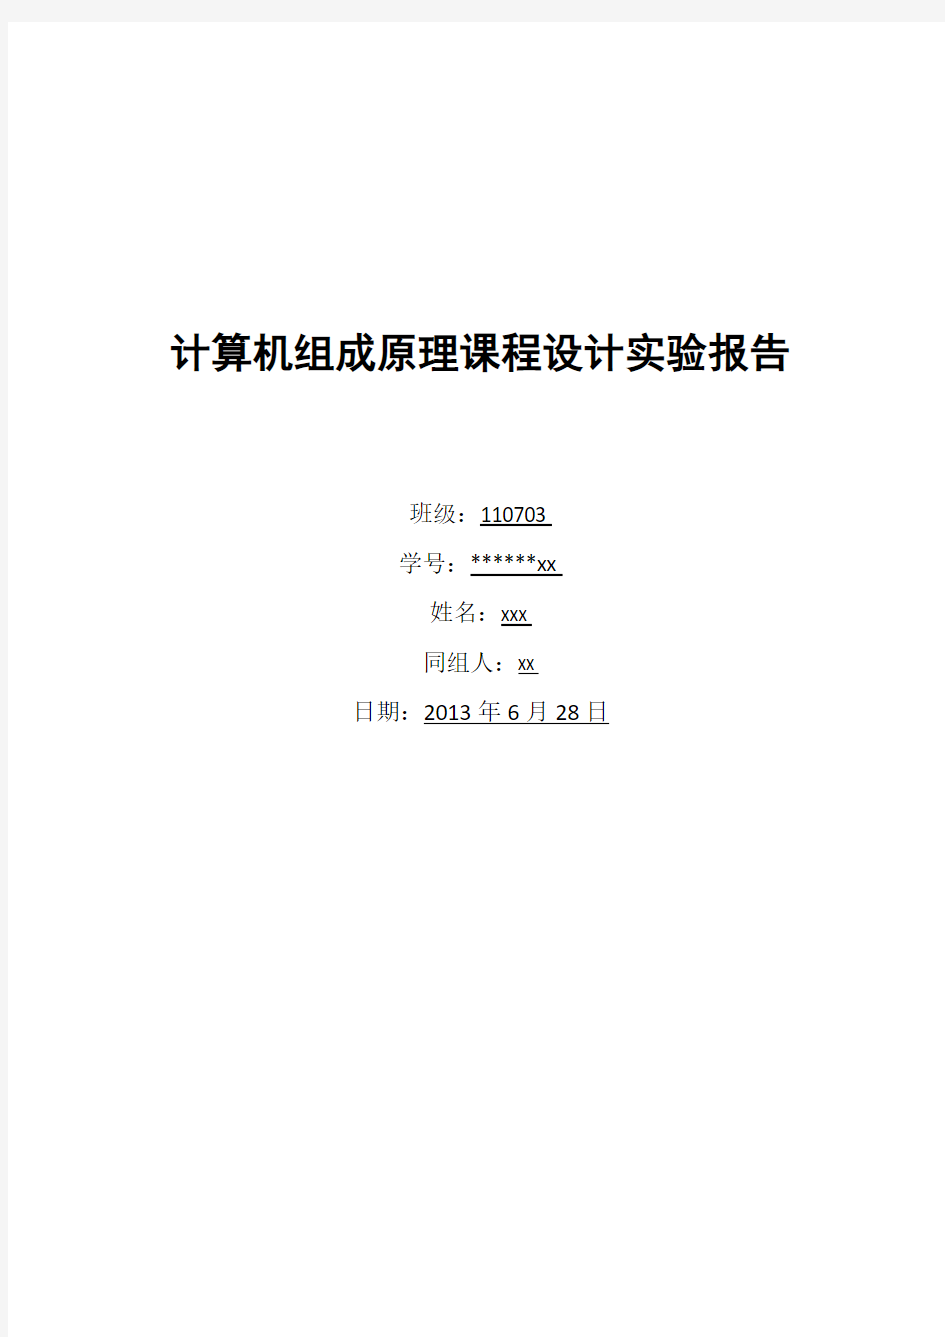 北京工业大学 计算机组成原理课设 报告